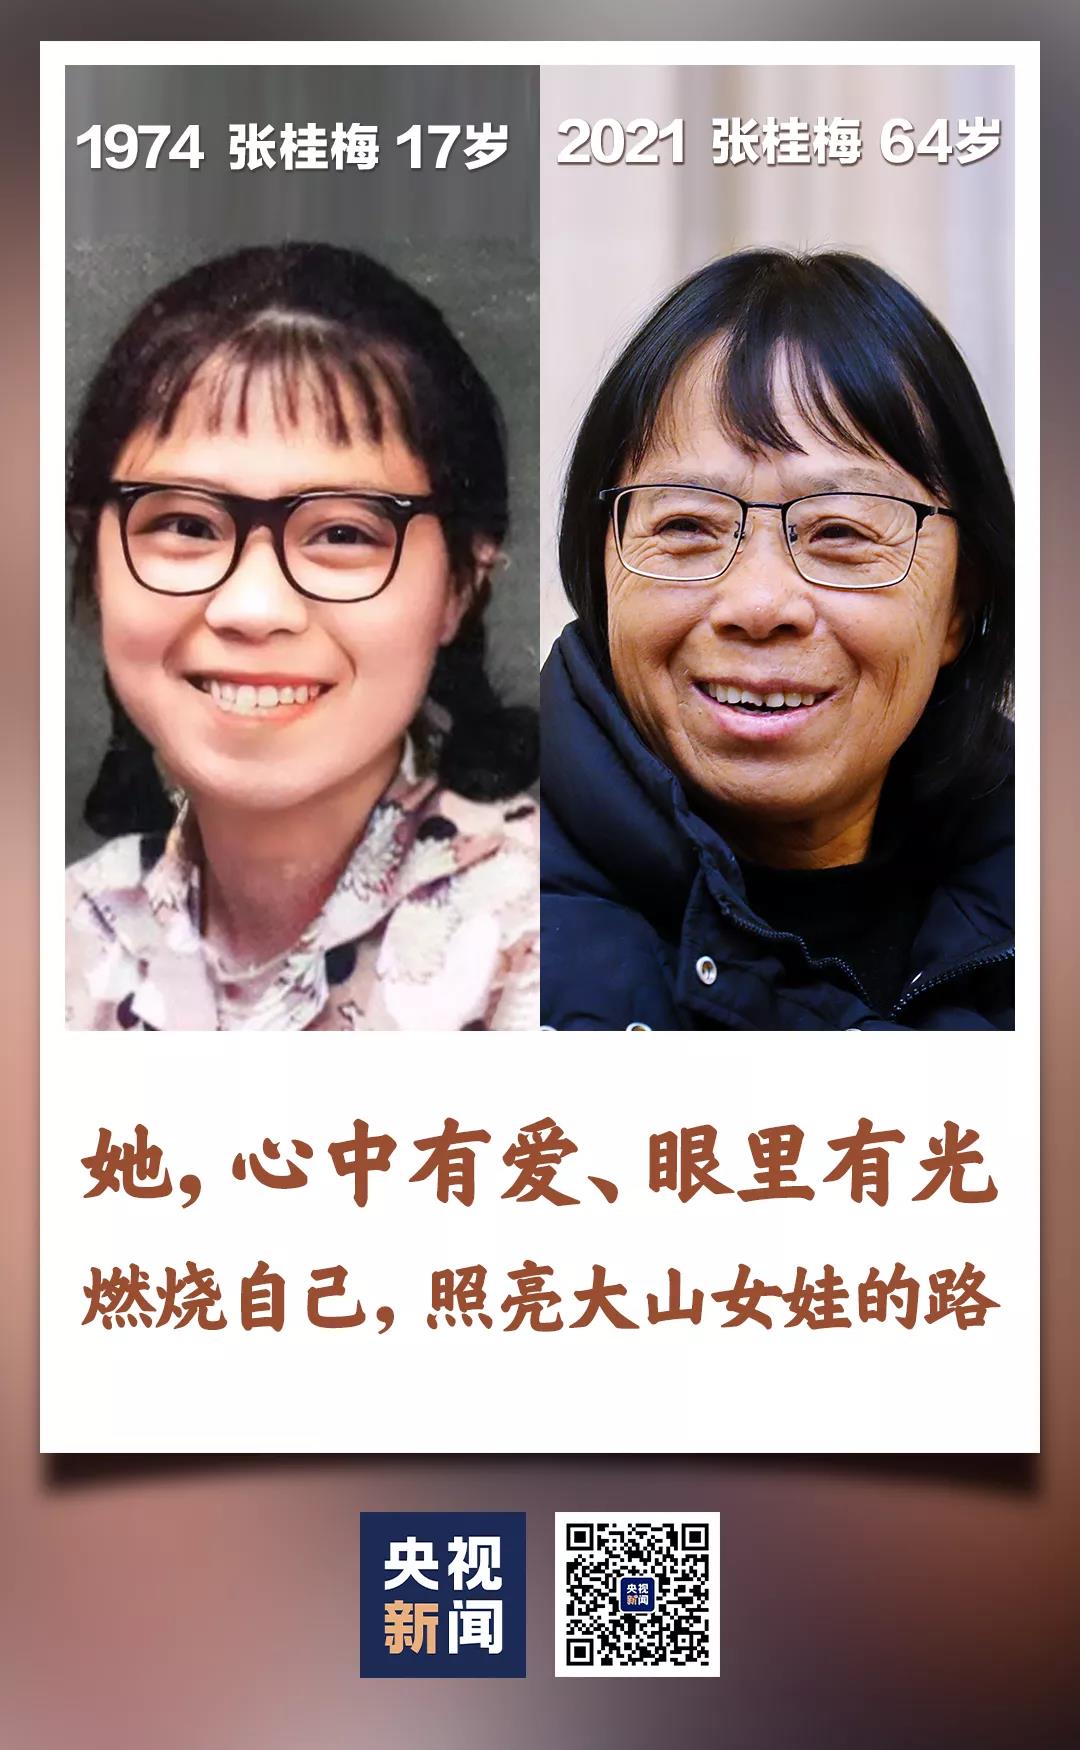 潘涛: 今天,张桂梅老师一张17岁时的照片让很多人感慨万千,年轻时的张